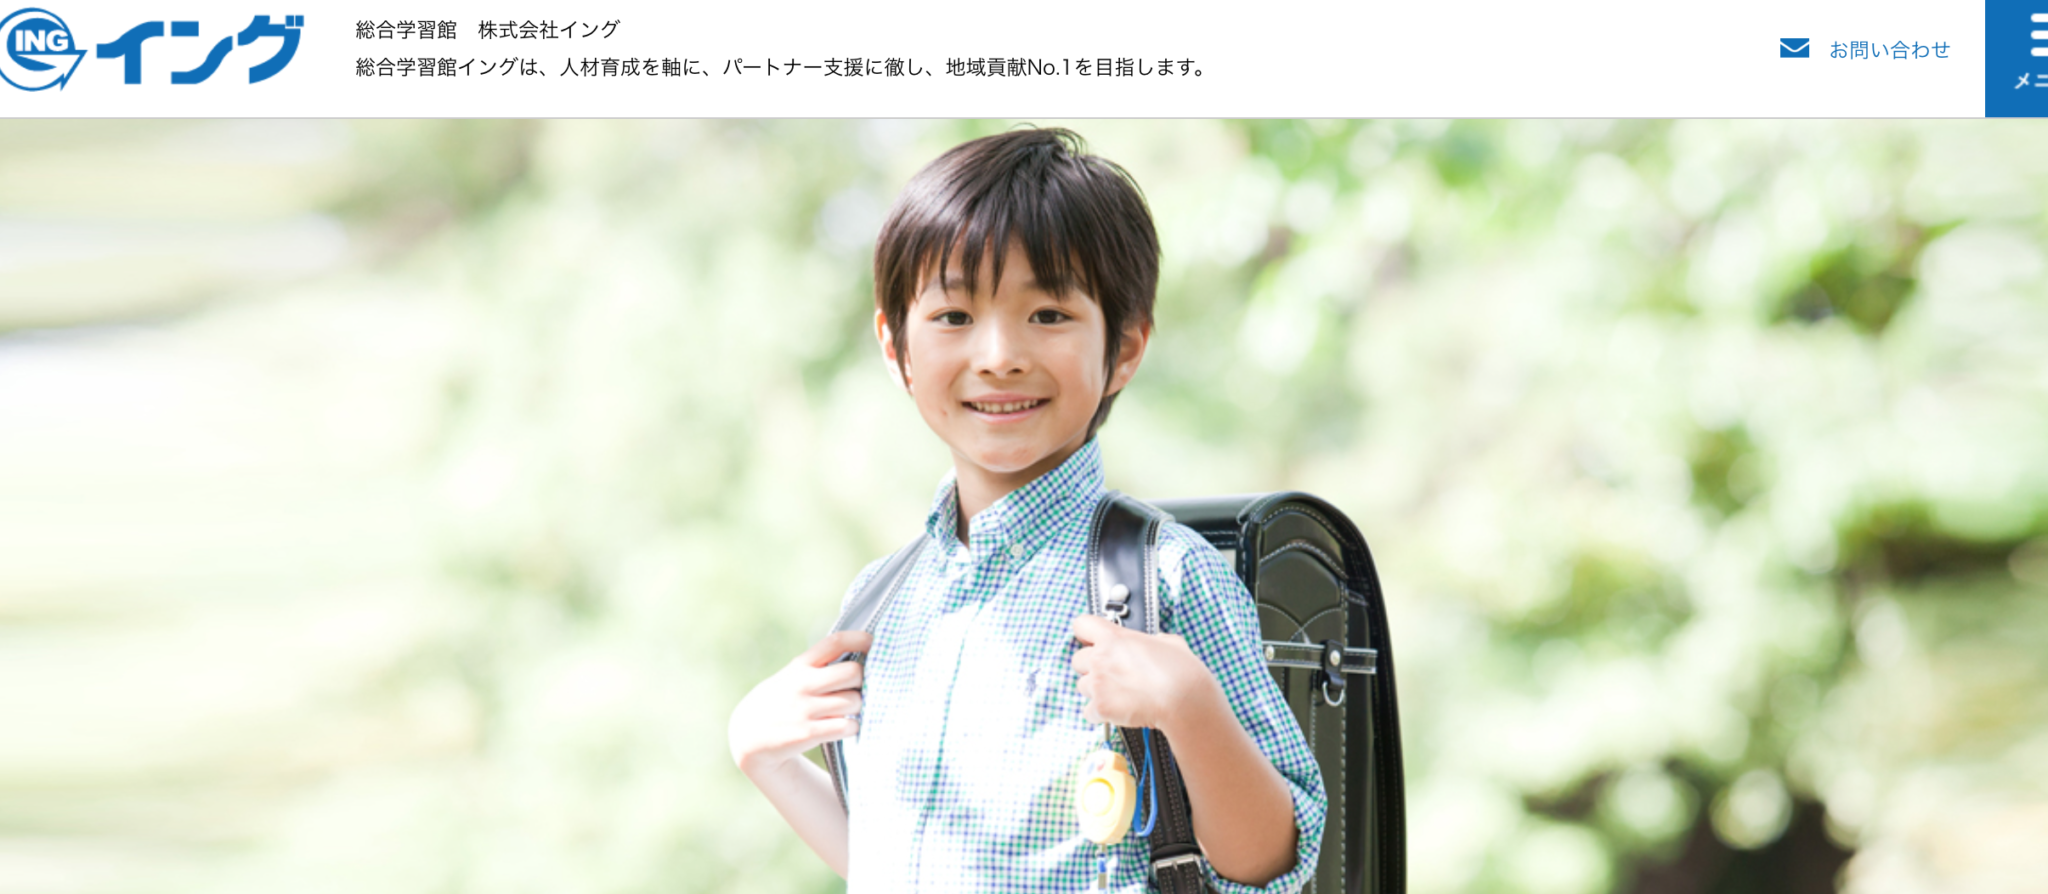 関西圏で学習塾を展開する株式会社イング様と業務提携いたします 大阪発着でコラボプログラム チャレンジワールド